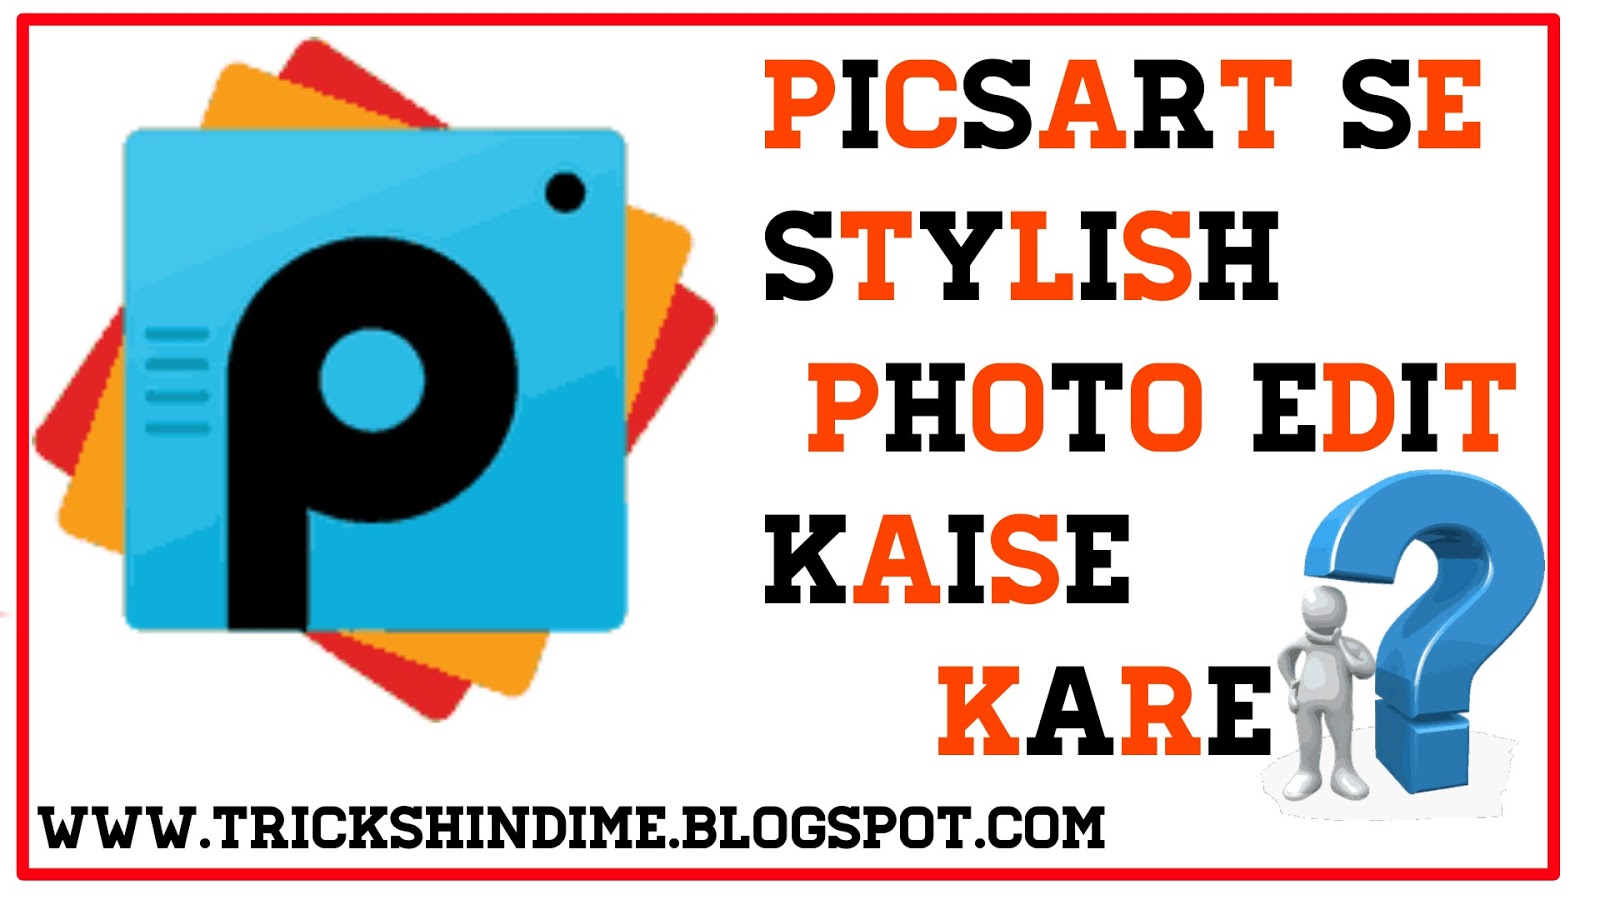 PicsArt Se Stylish Photo Edit Kaise Kare Tricks Hindi Me